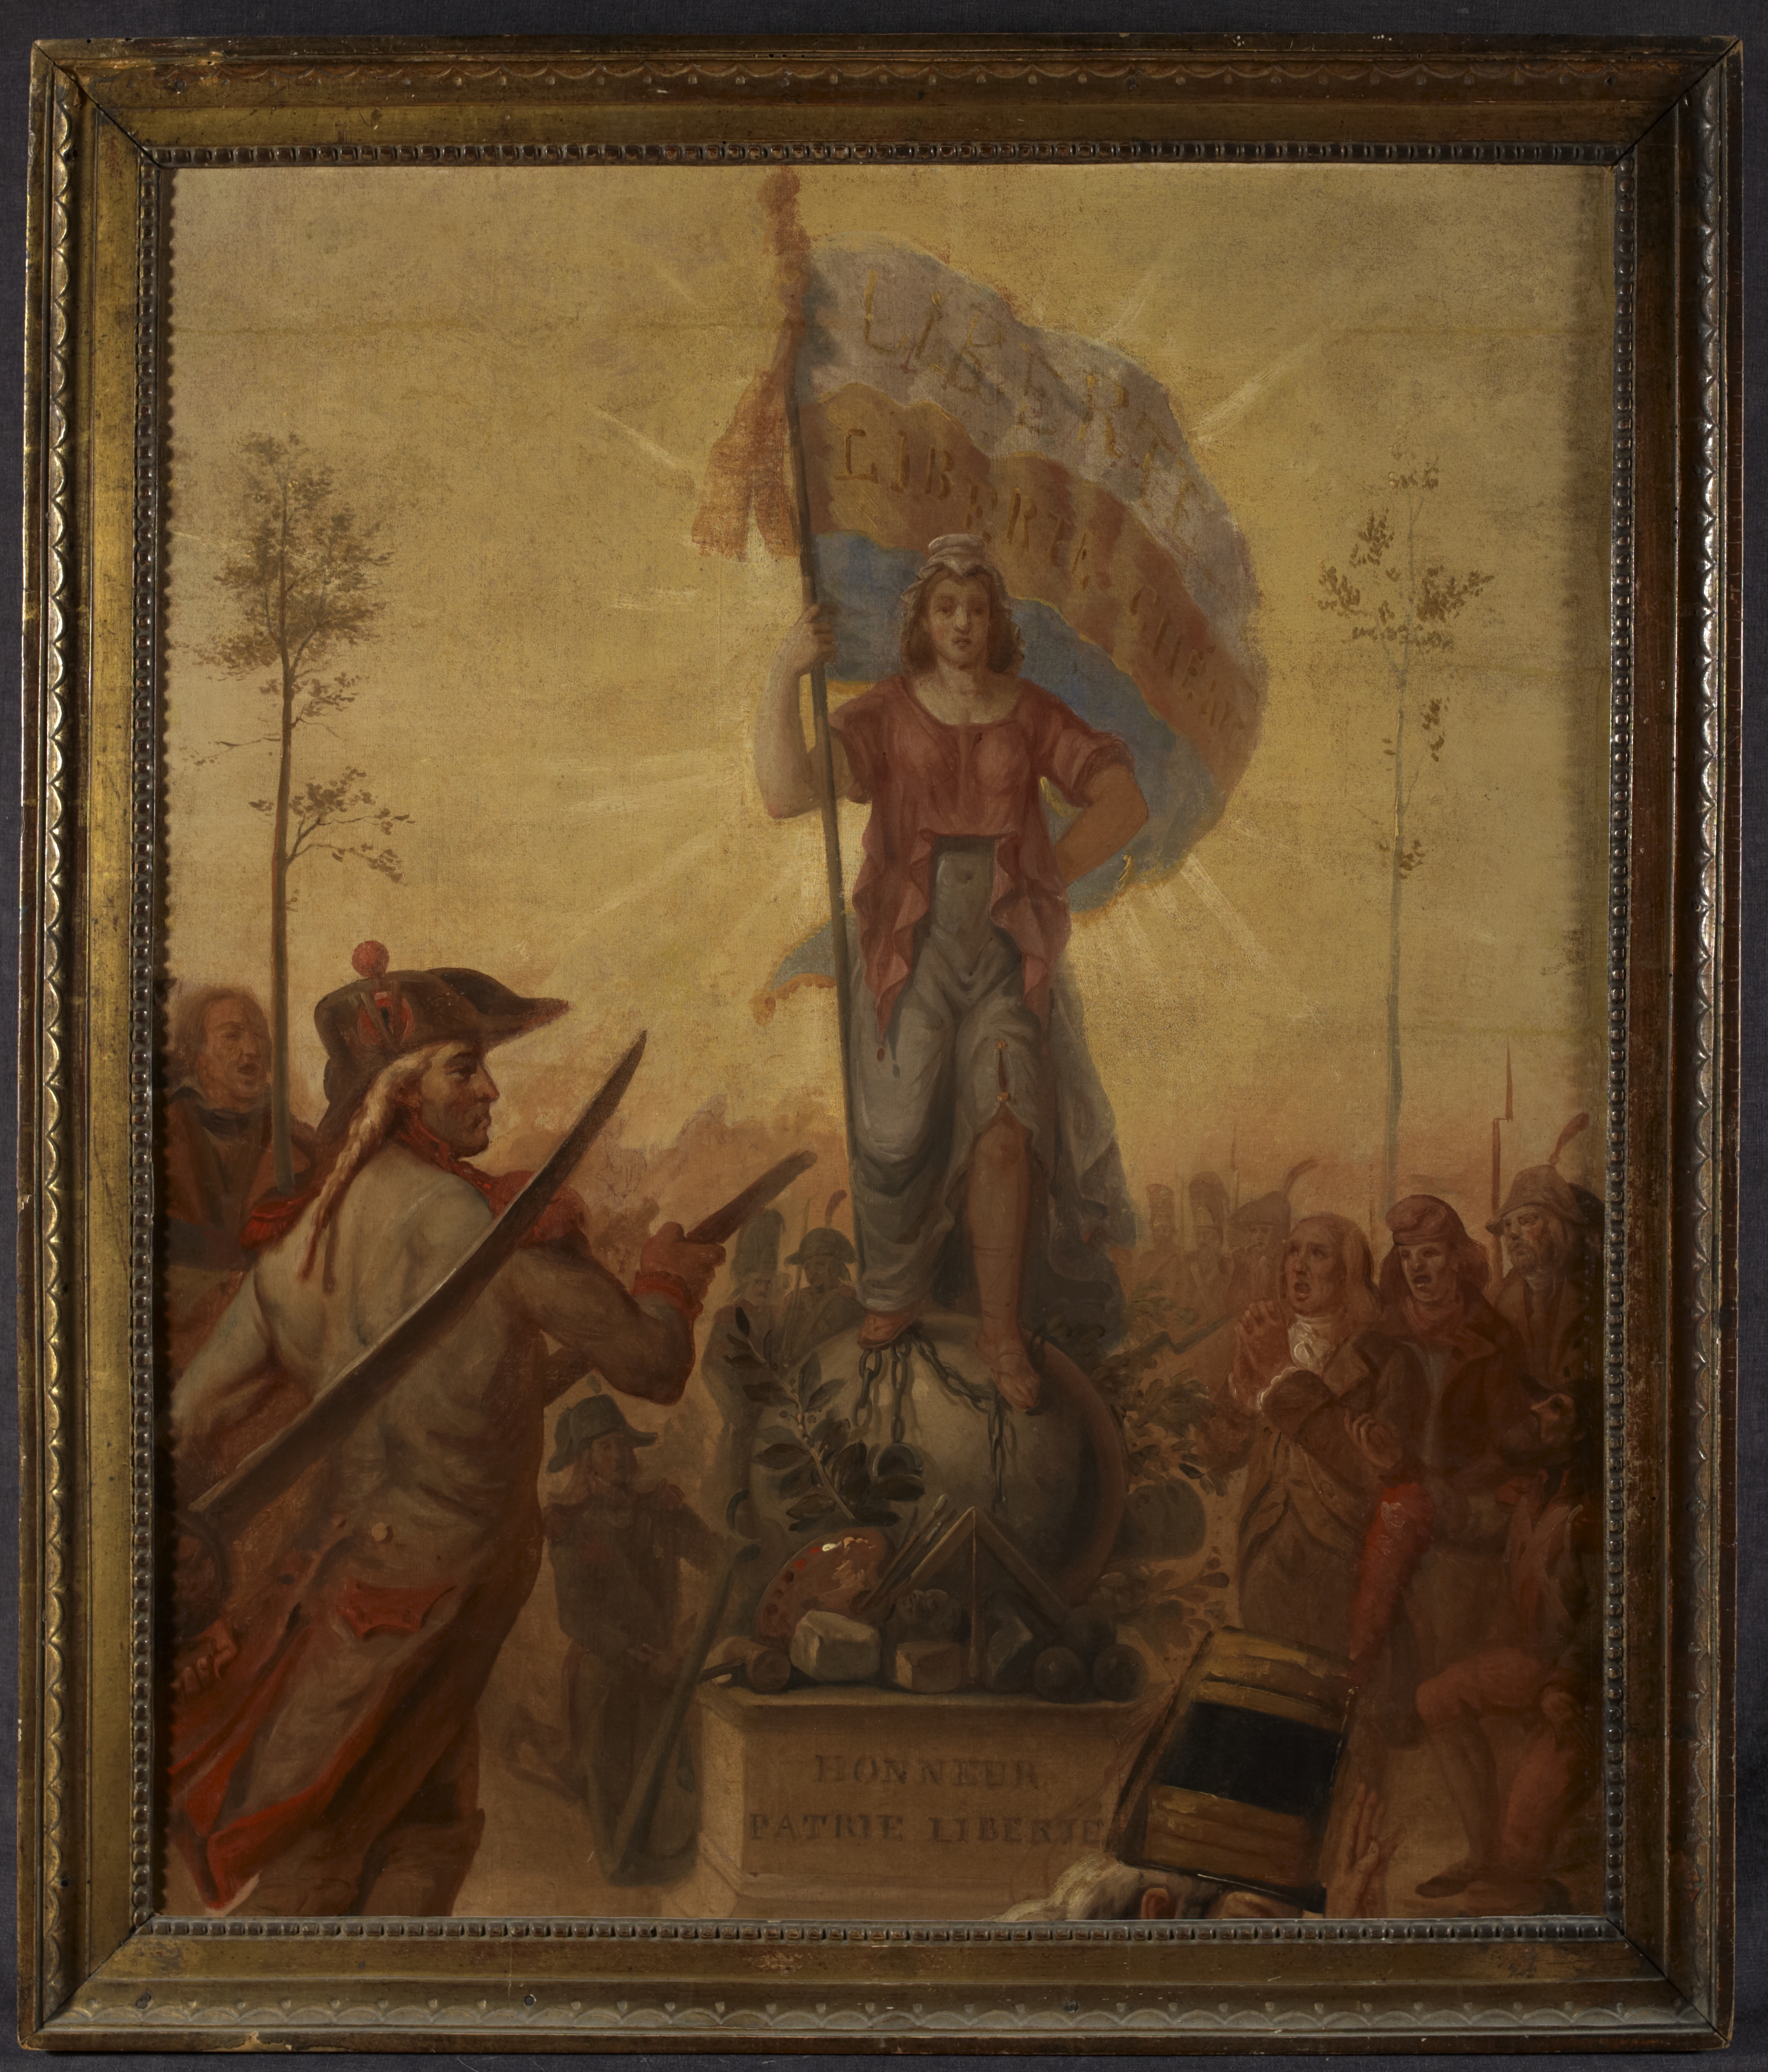 Liberté, Liberté chérie - Auteur anonyme (vers 1830-1833) - Coll. Musée de la Révolution française